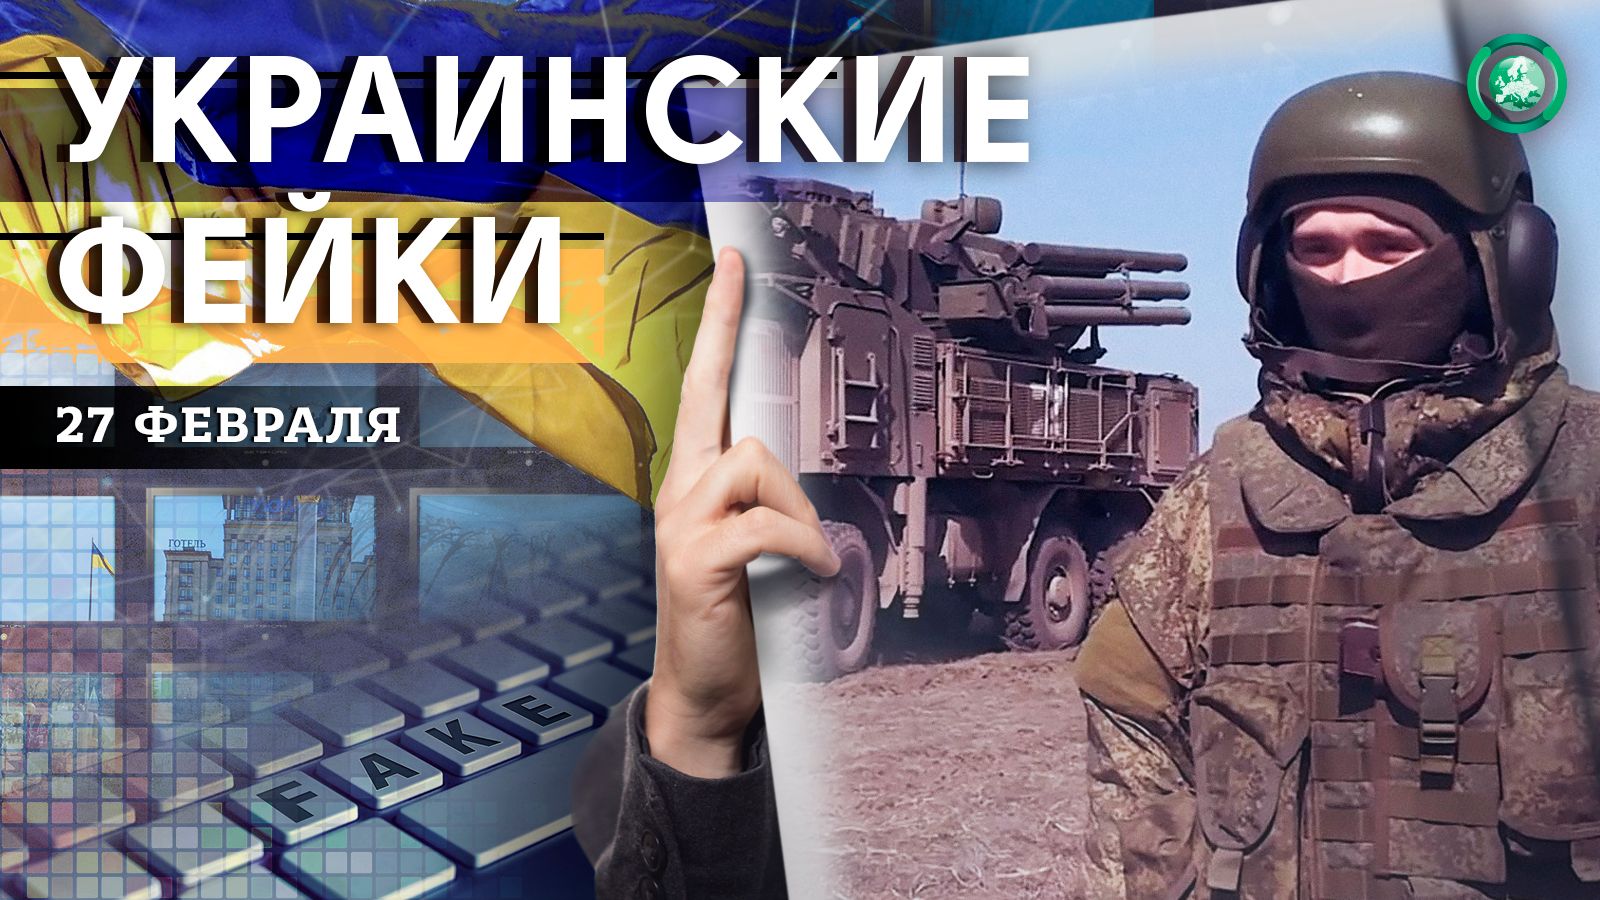 Обстрел Донецка и эвакуация из Алешек — какие фейки распространили на Украине 27 февраля